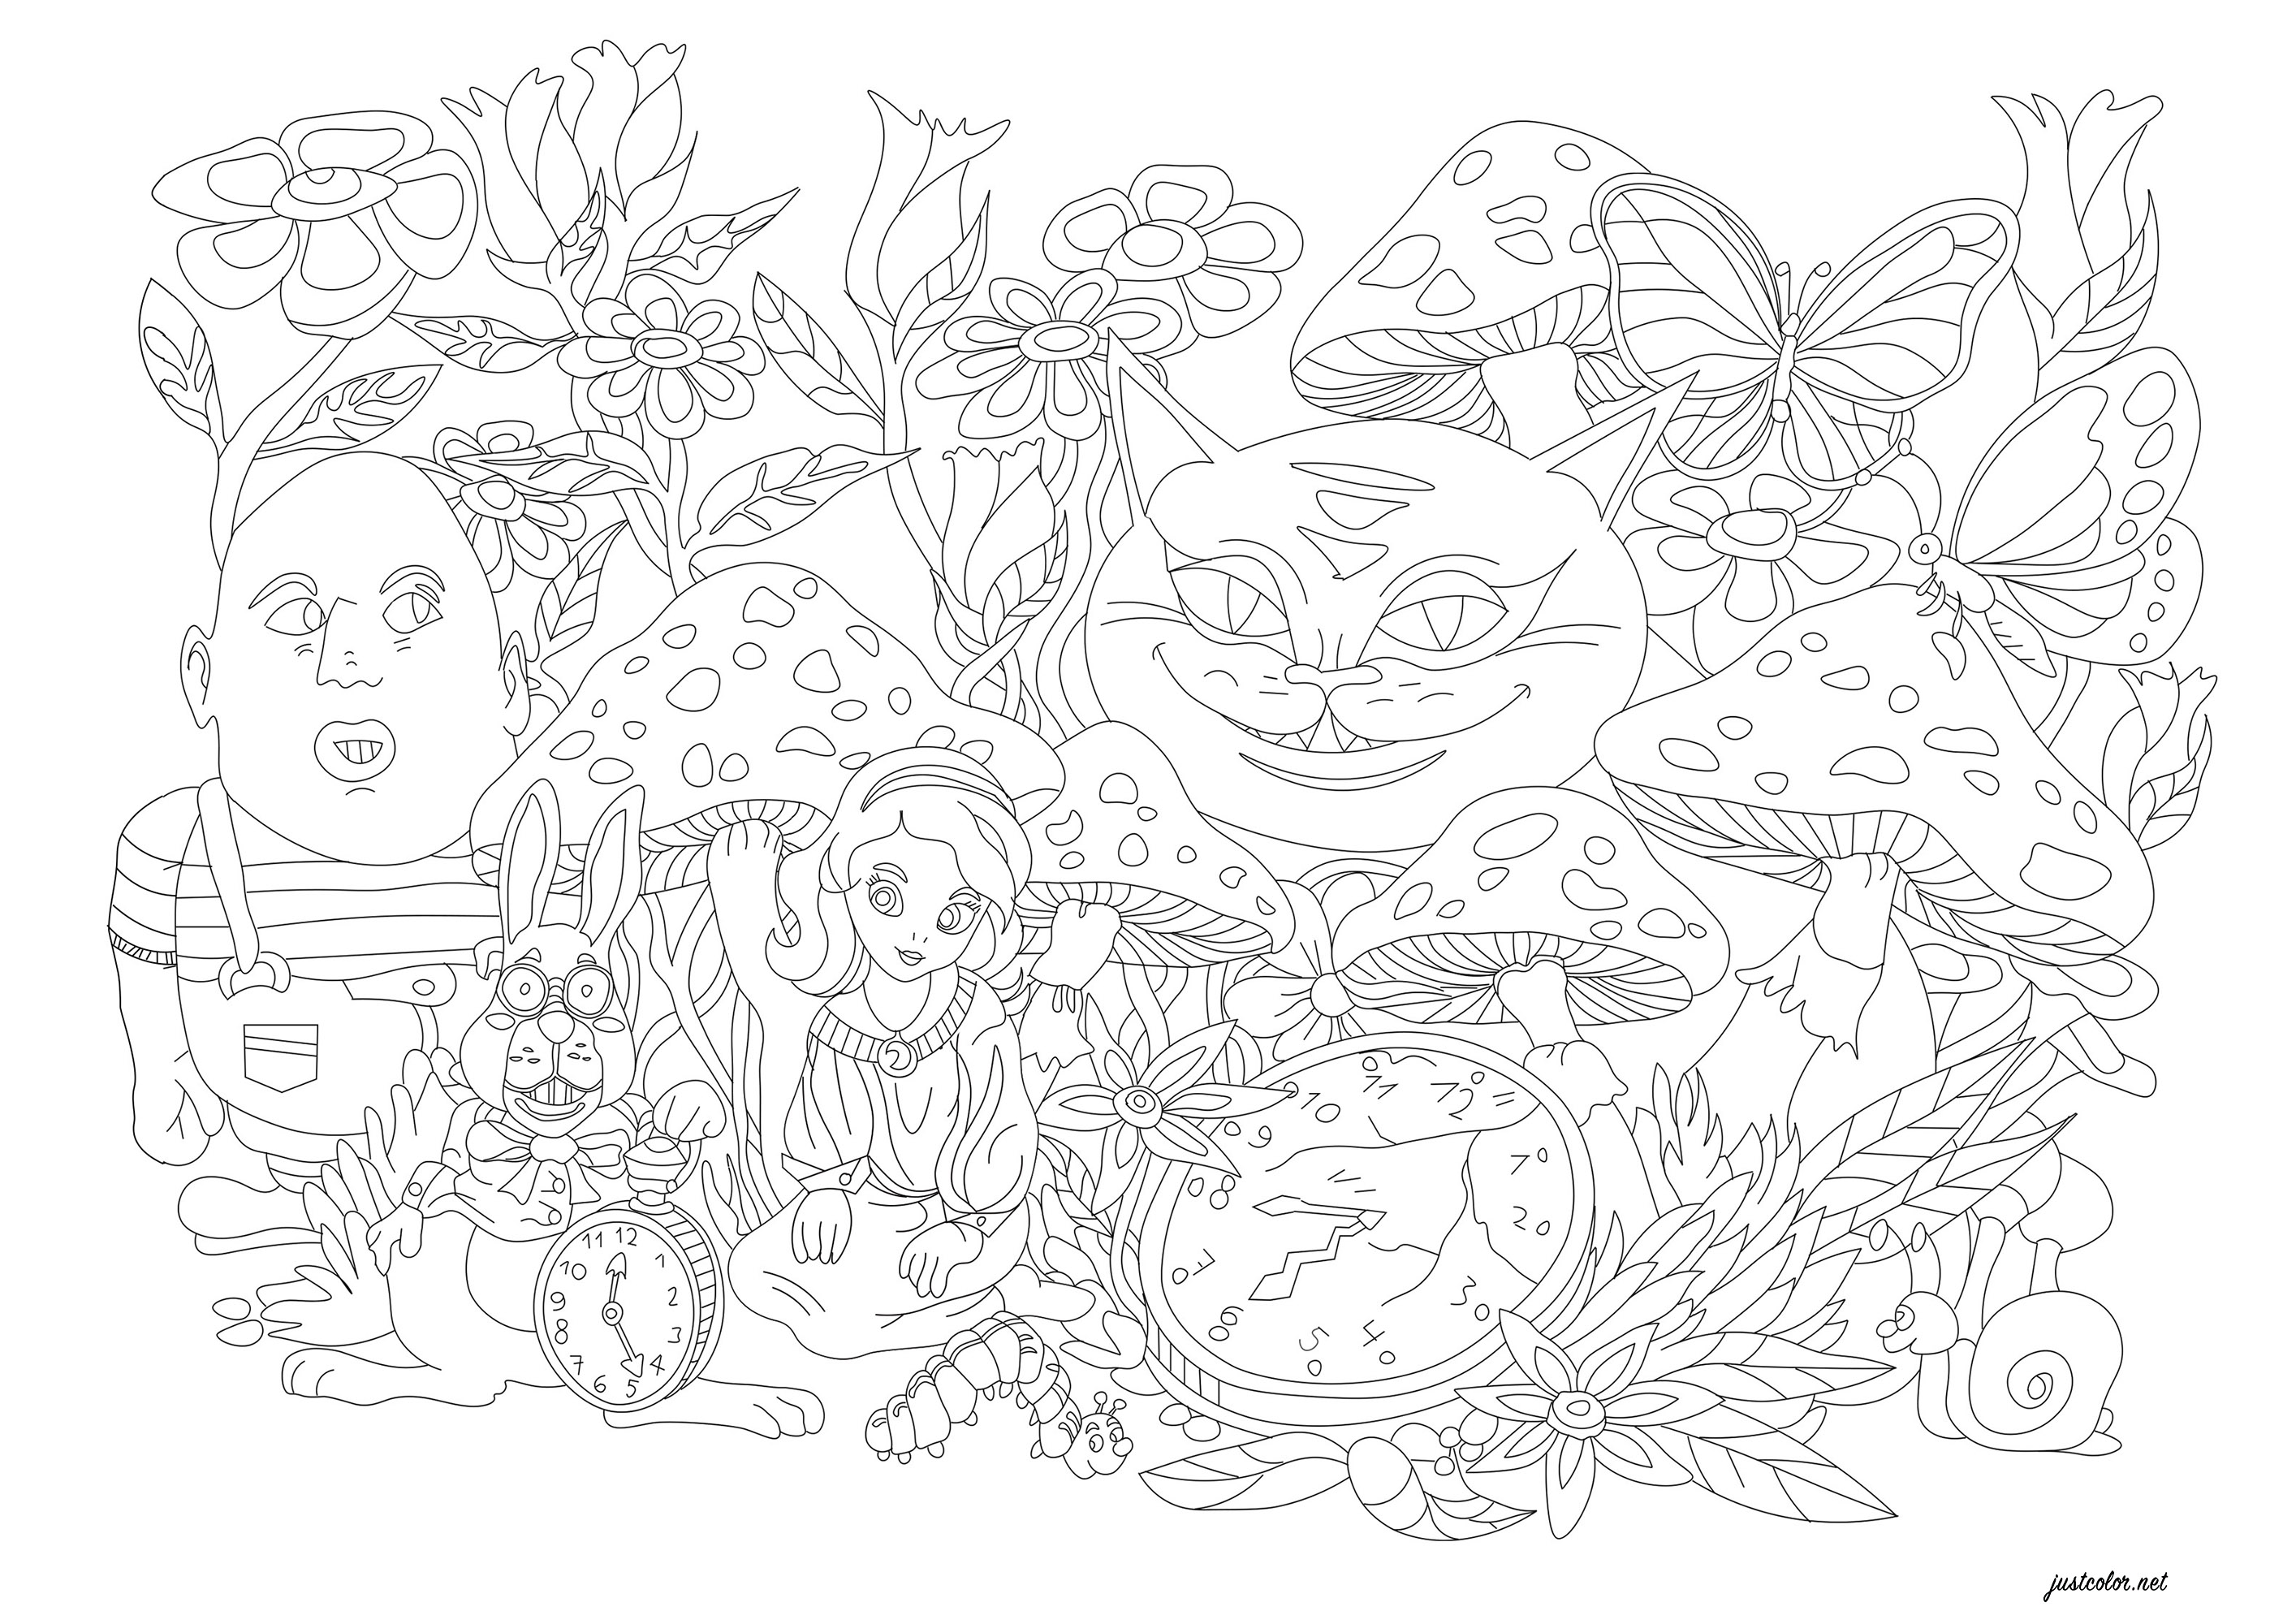 Un'illustrazione da colorare in riferimento al libro 'Le avventure di Alice nel paese delle meraviglie'. È un romanzo inglese pubblicato nel 1865 da Lewis Carroll. Da colorare: fiori fantastici, mostri, il coniglio, mostri, una lumaca, farfalle e la meravigliosa Alice, Artista : Morgan